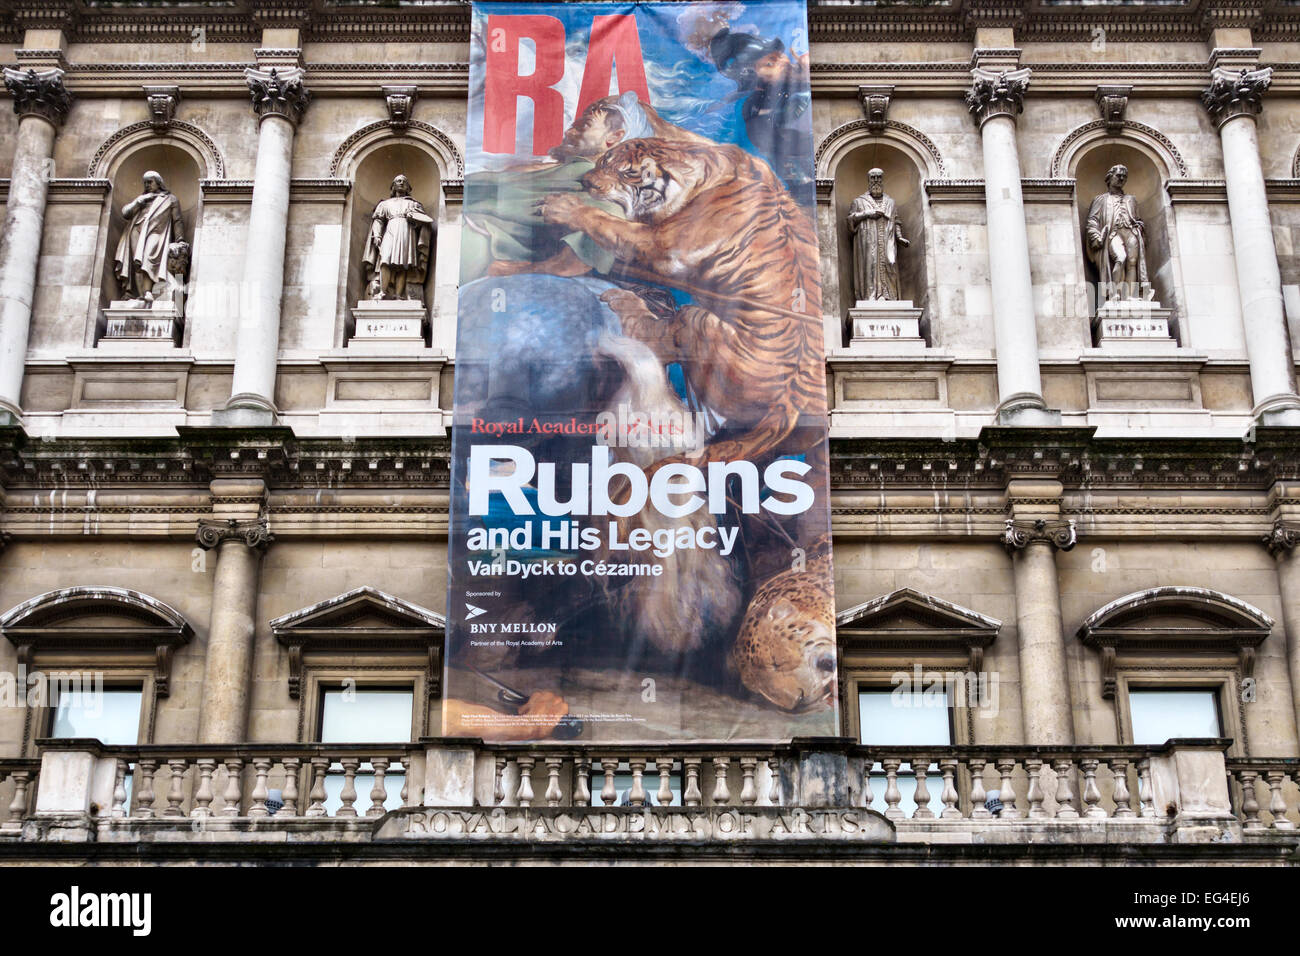 La Royal Academy of Arts, Burlington House, Londres, Reino Unido. Actualmente (2015), la celebración de una gran exposición sobre "Rubens y su legado' Foto de stock